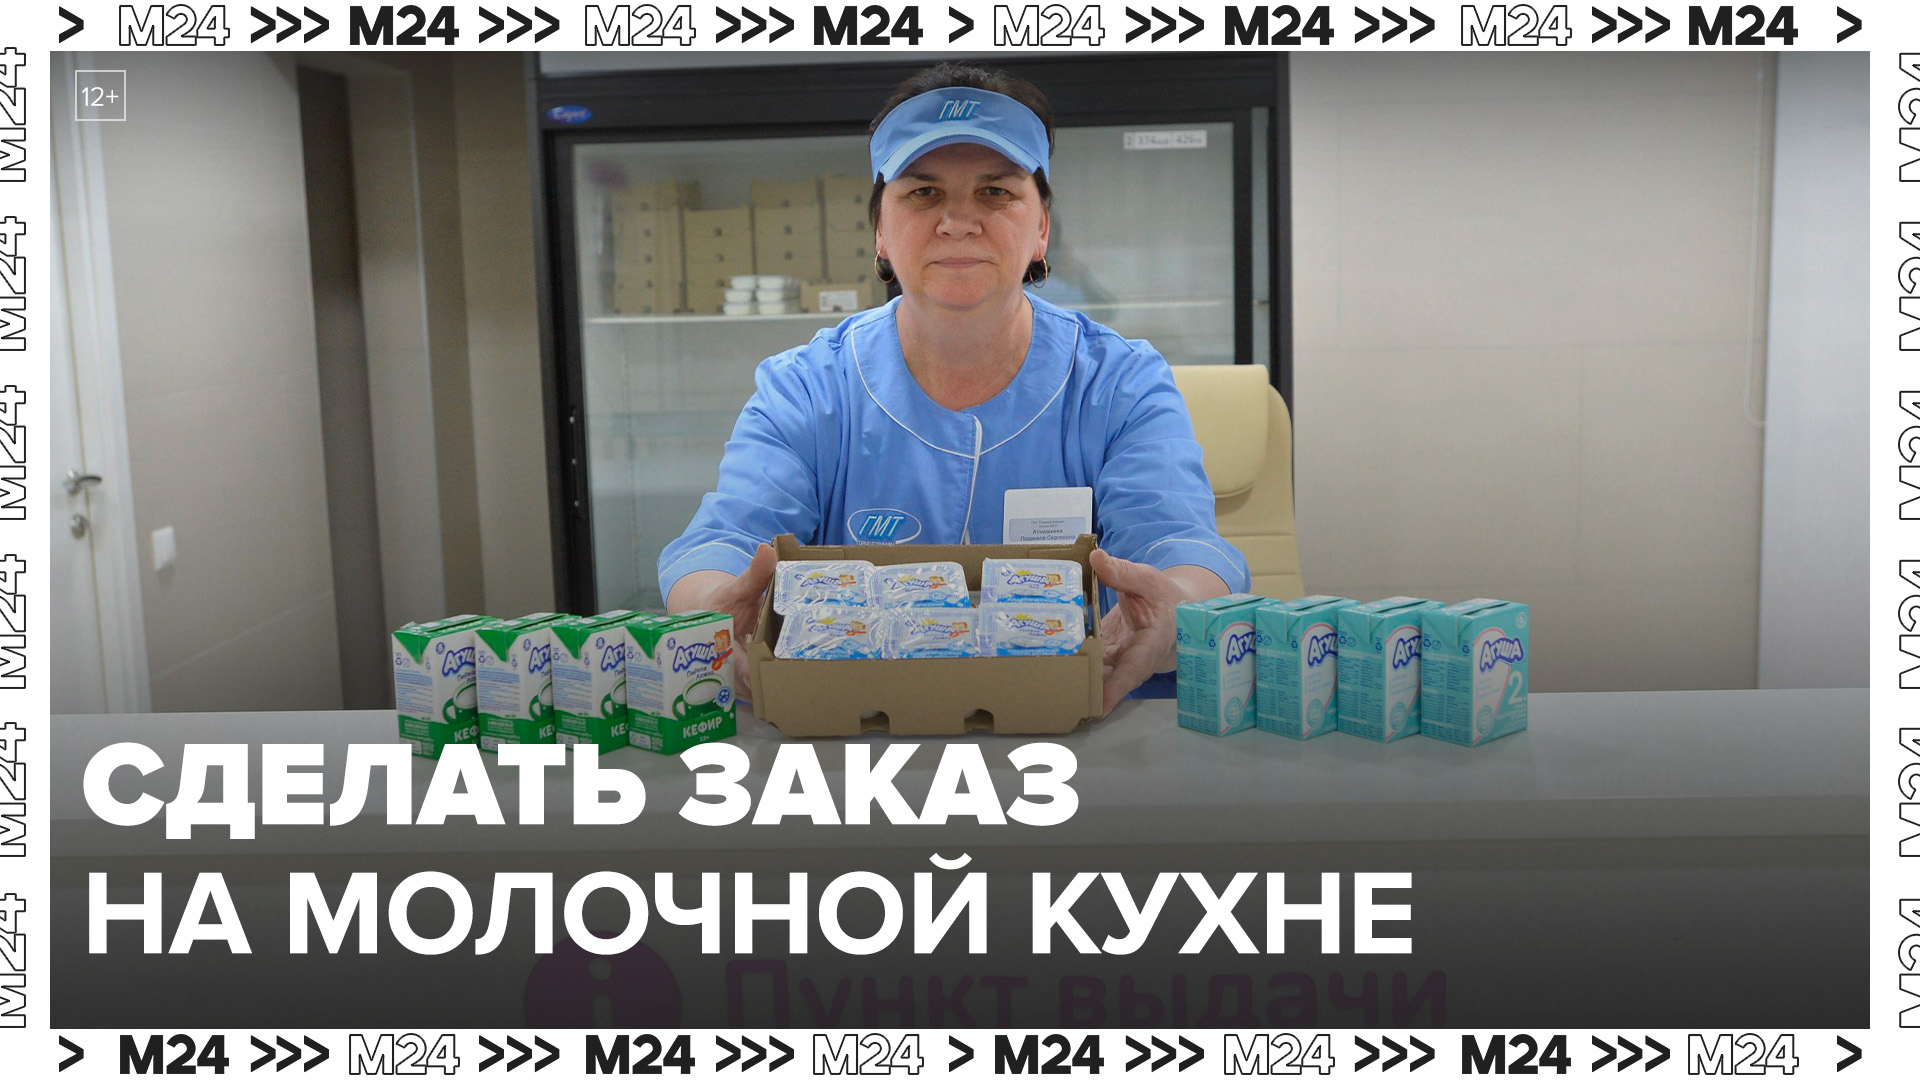 QR-код для заказа продуктов на молочной кухне доступен в электронных медкартах в Москве - Москва 24